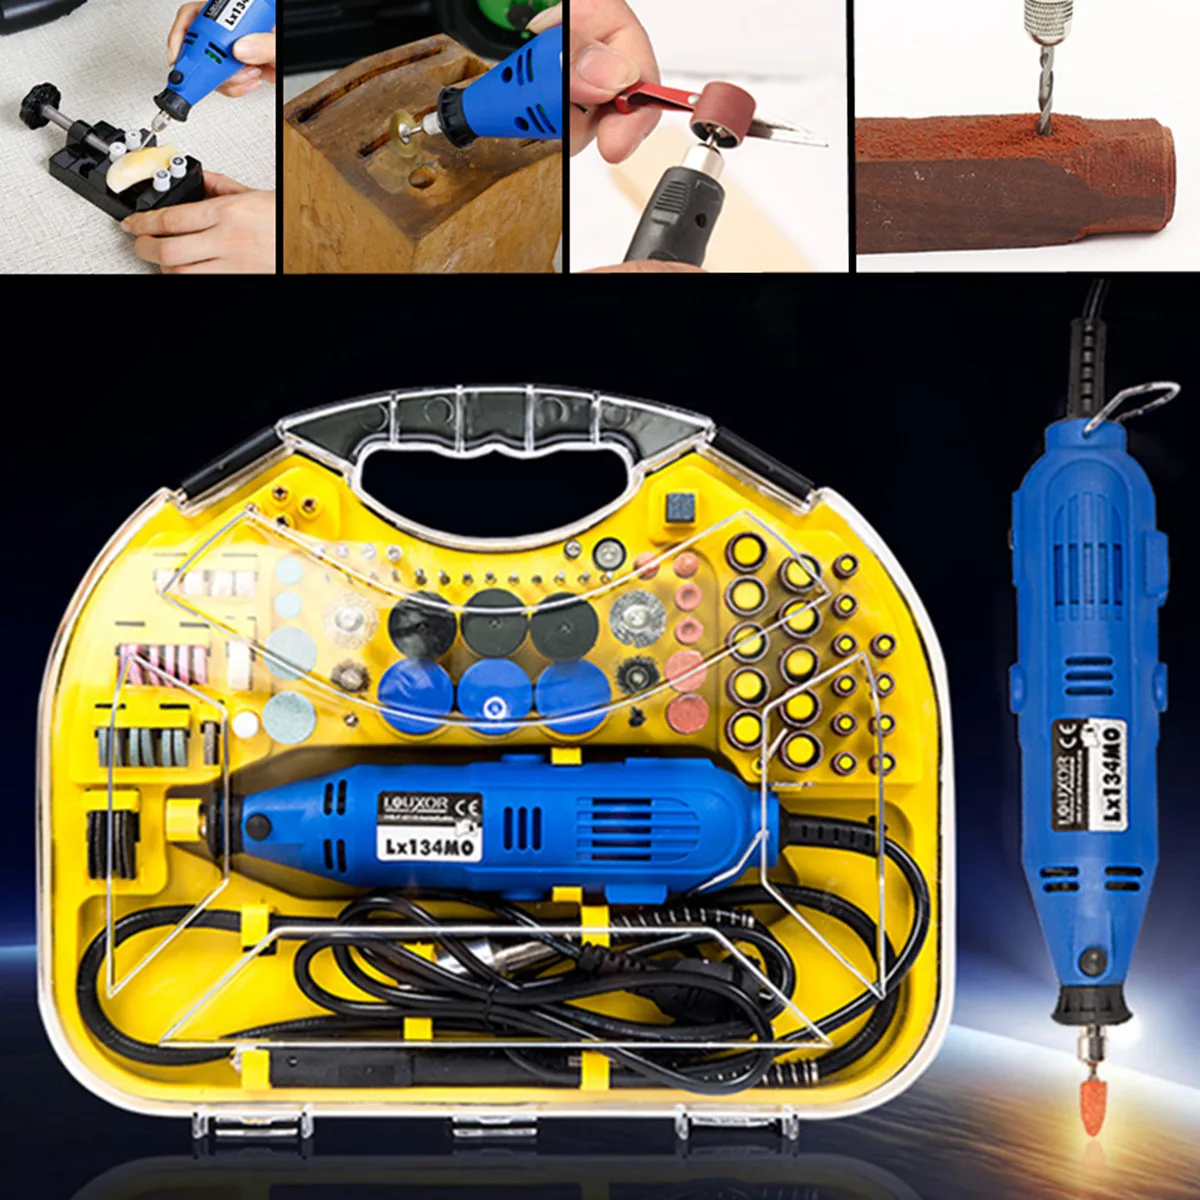 

211Pcs Electric Rotary Drill Grinder Engraver Sander Polisher DIY Craft Tool Set 220V/110V 50-60Hz 8000-30000/min Lightweight